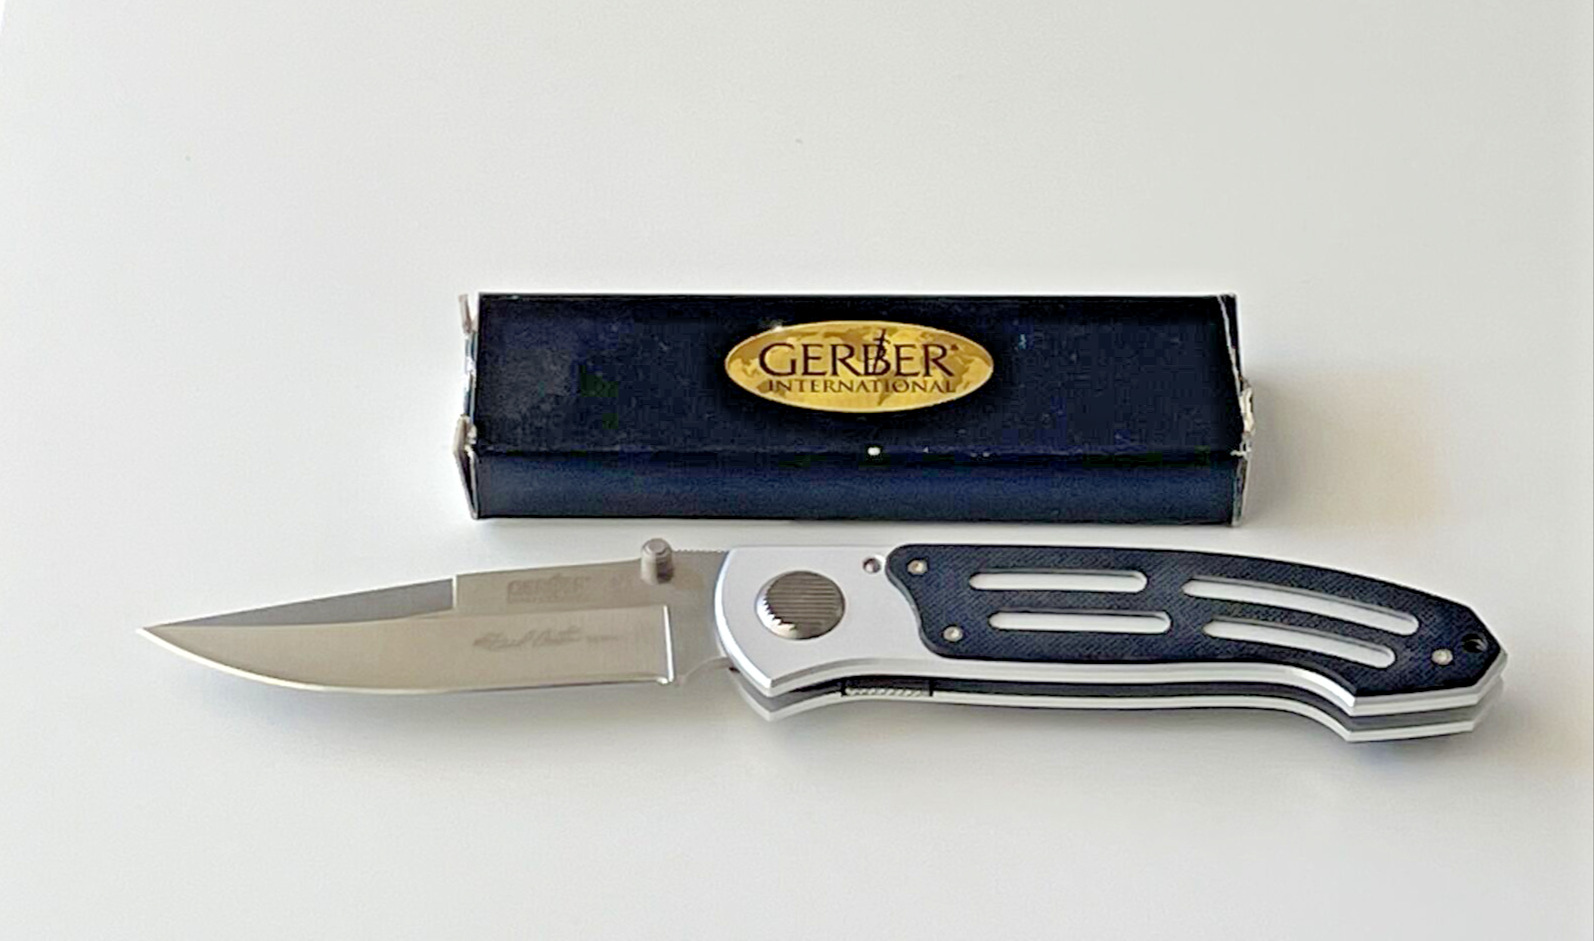 Gerber International Carter II Folding Knife First Production Run ATS-34 Taiwan